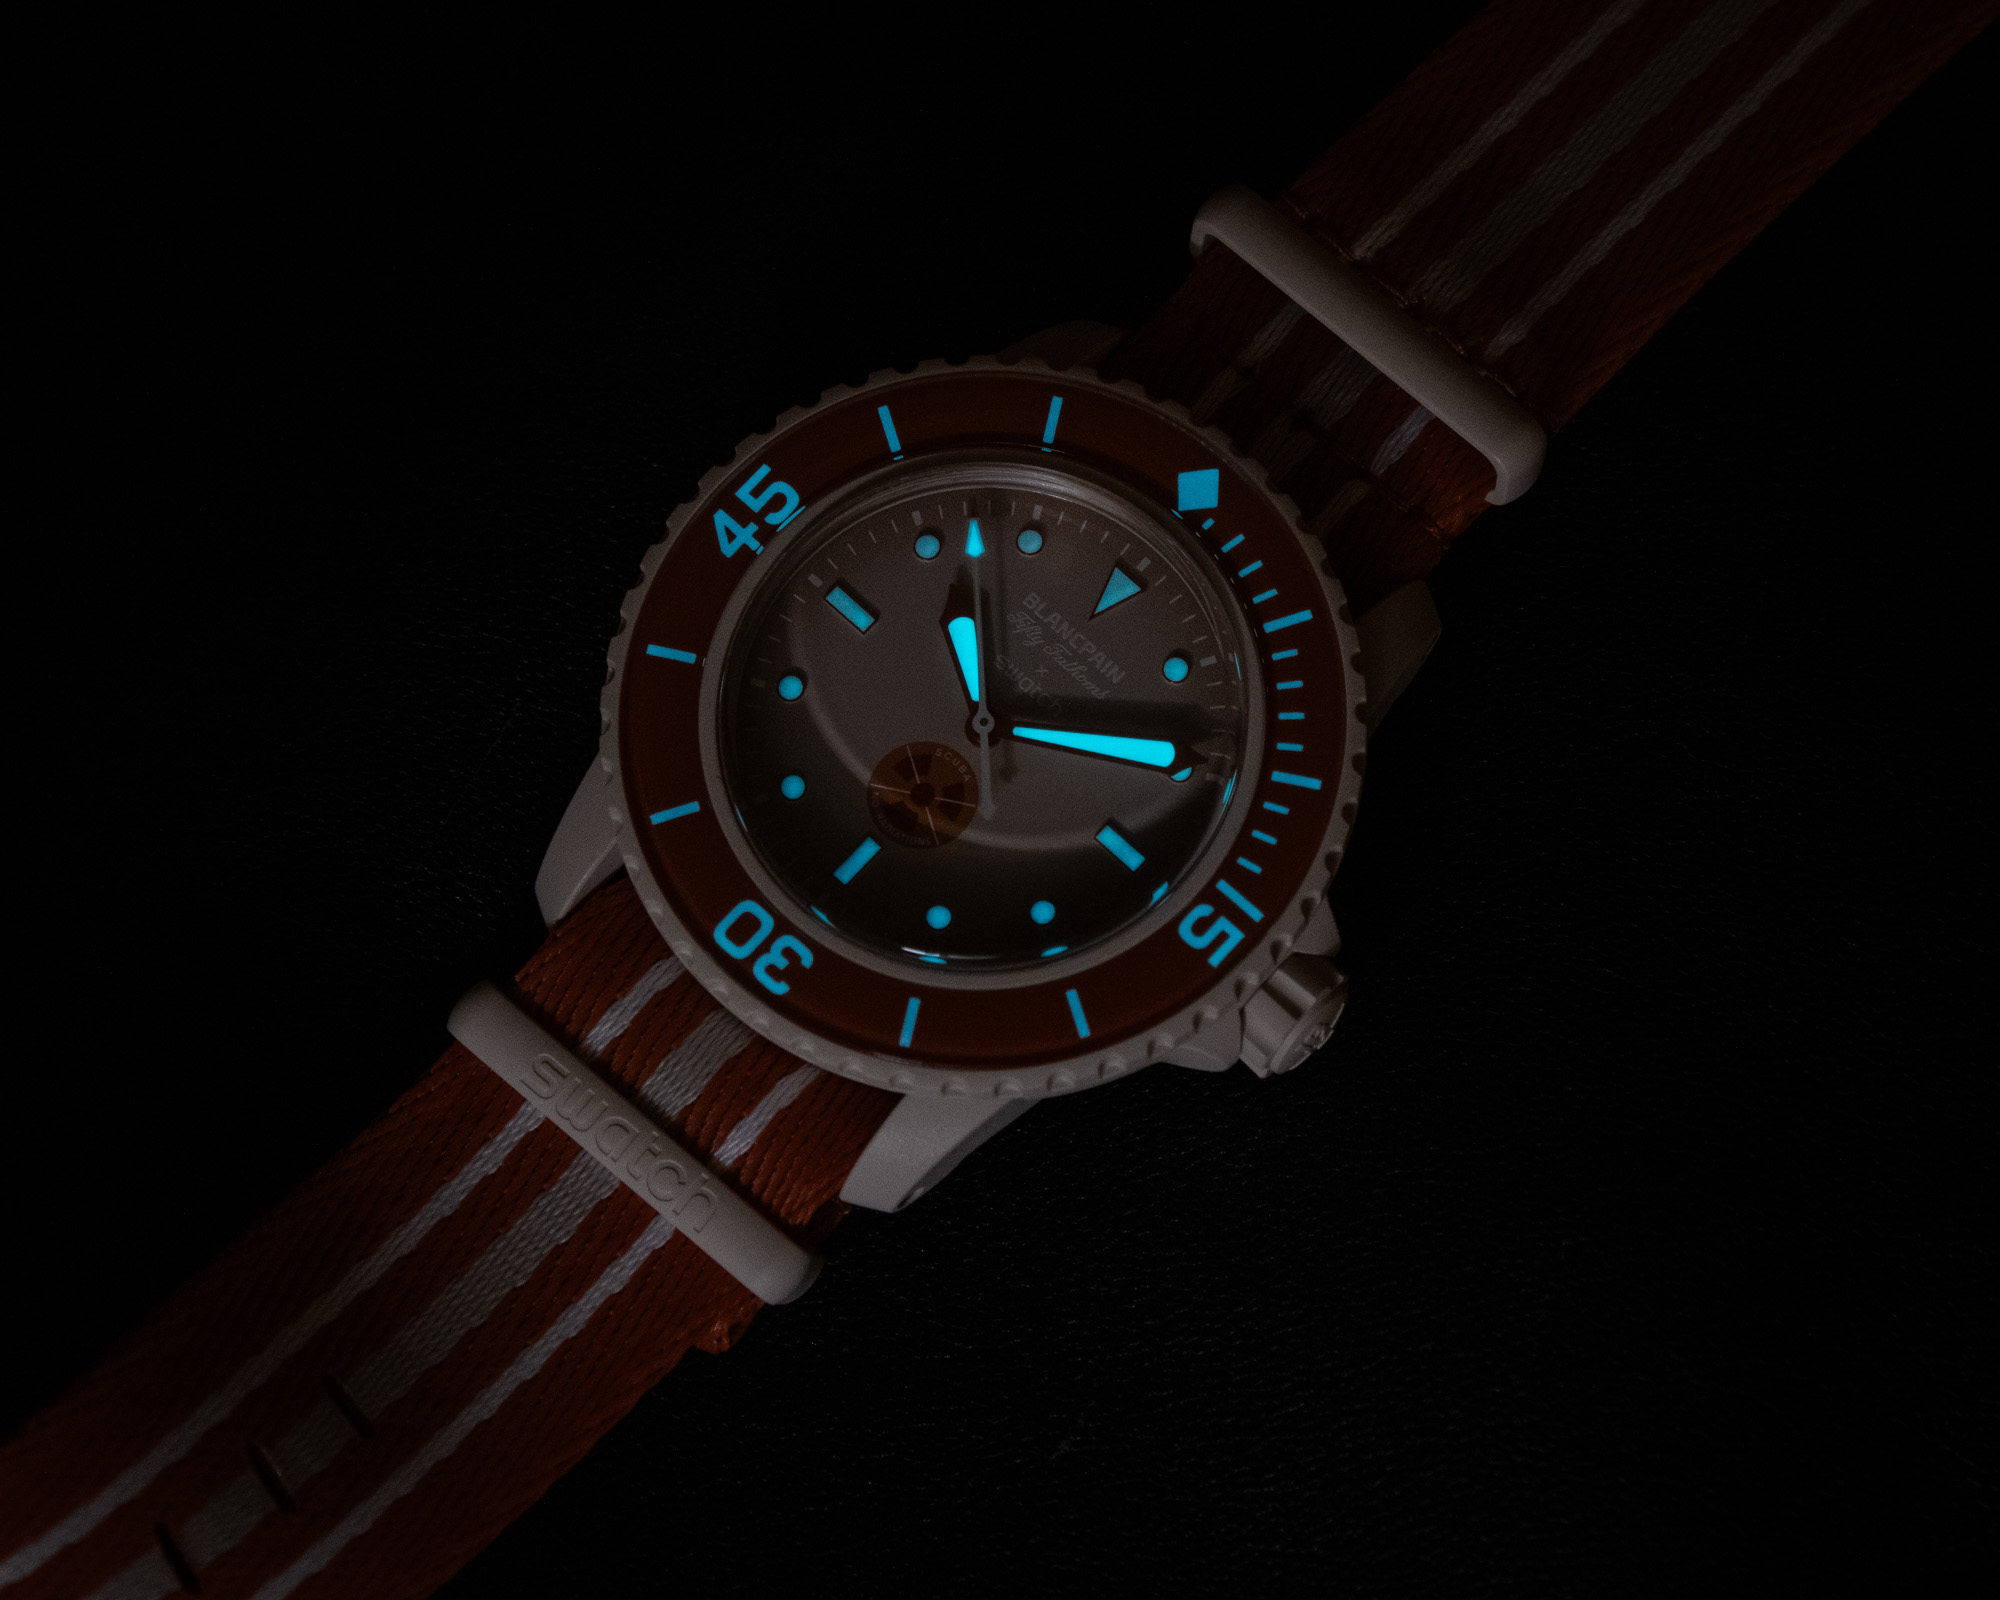 Искусство слияния миров: Обзор часов Blancpain X Swatch Scuba Fifty Fathoms Bioceramic с безупречным дизайном